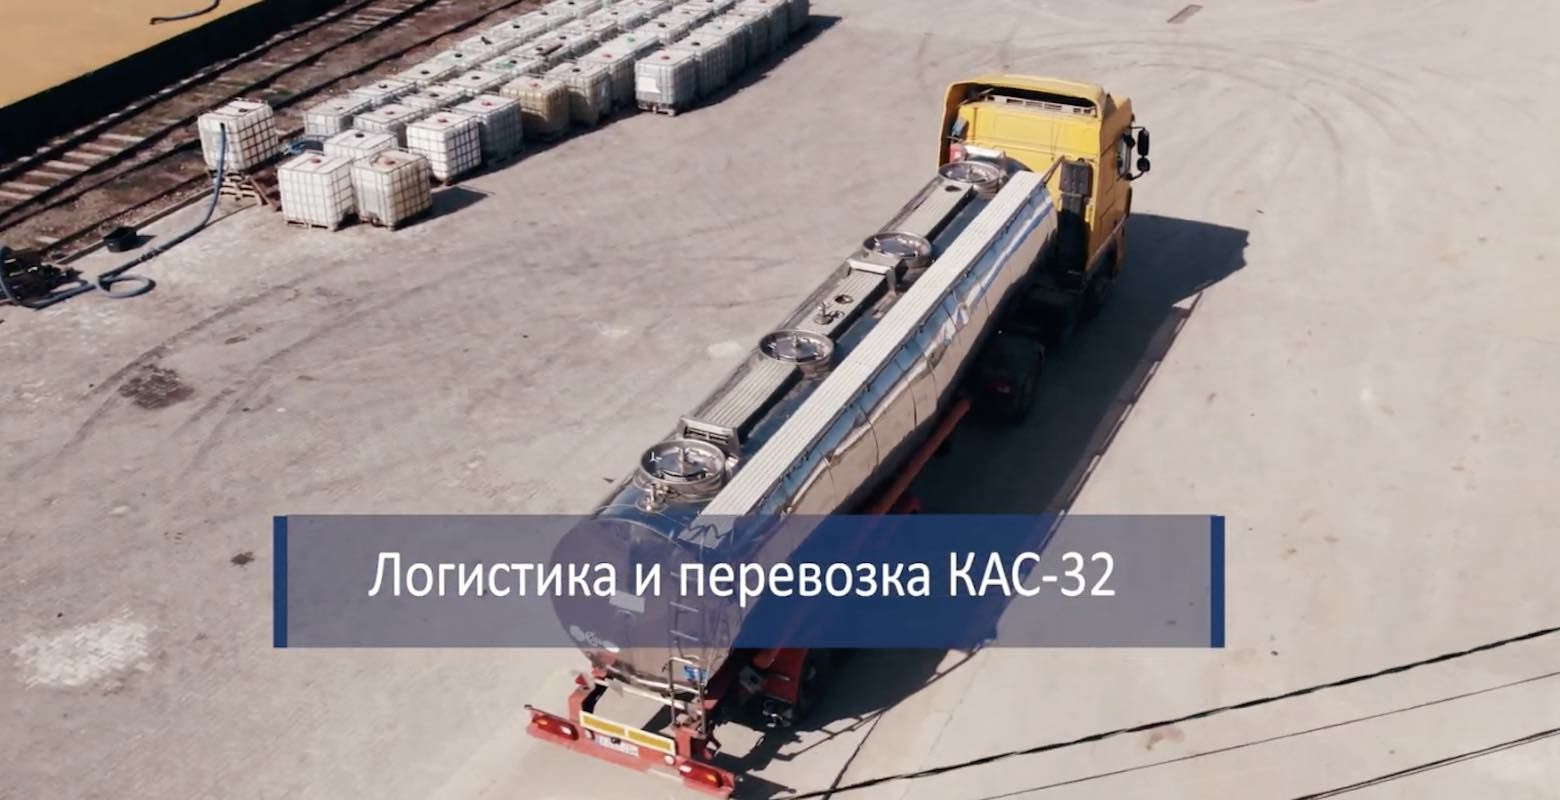 Логистика и перевозка КАС-32 - agroexpert.md